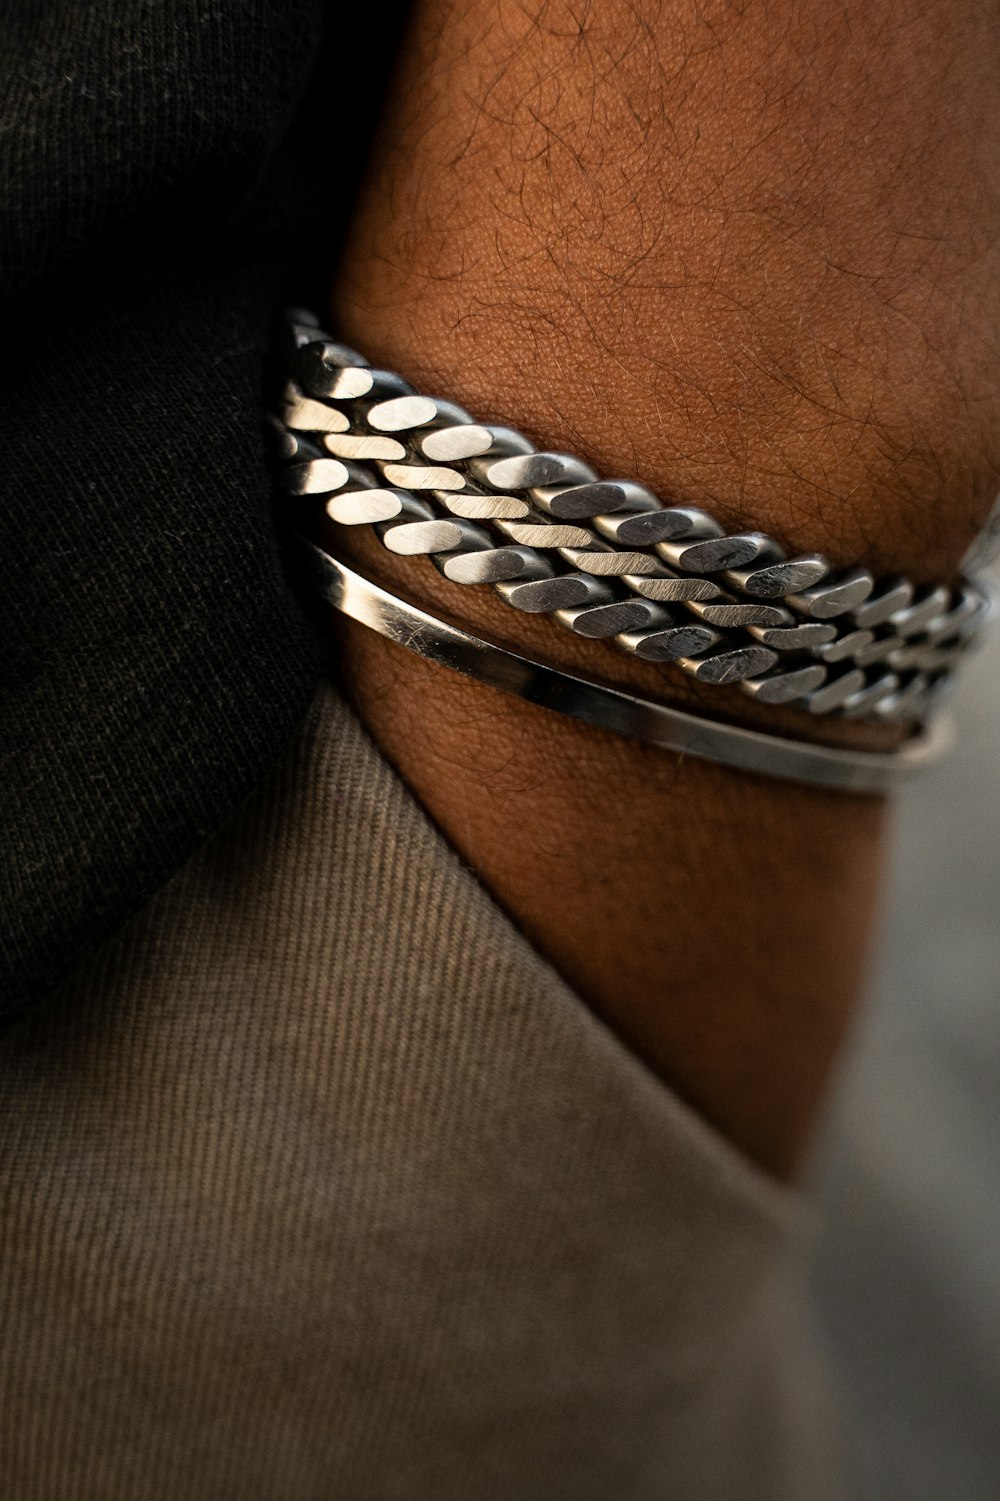 silver and diamond studded bracelet